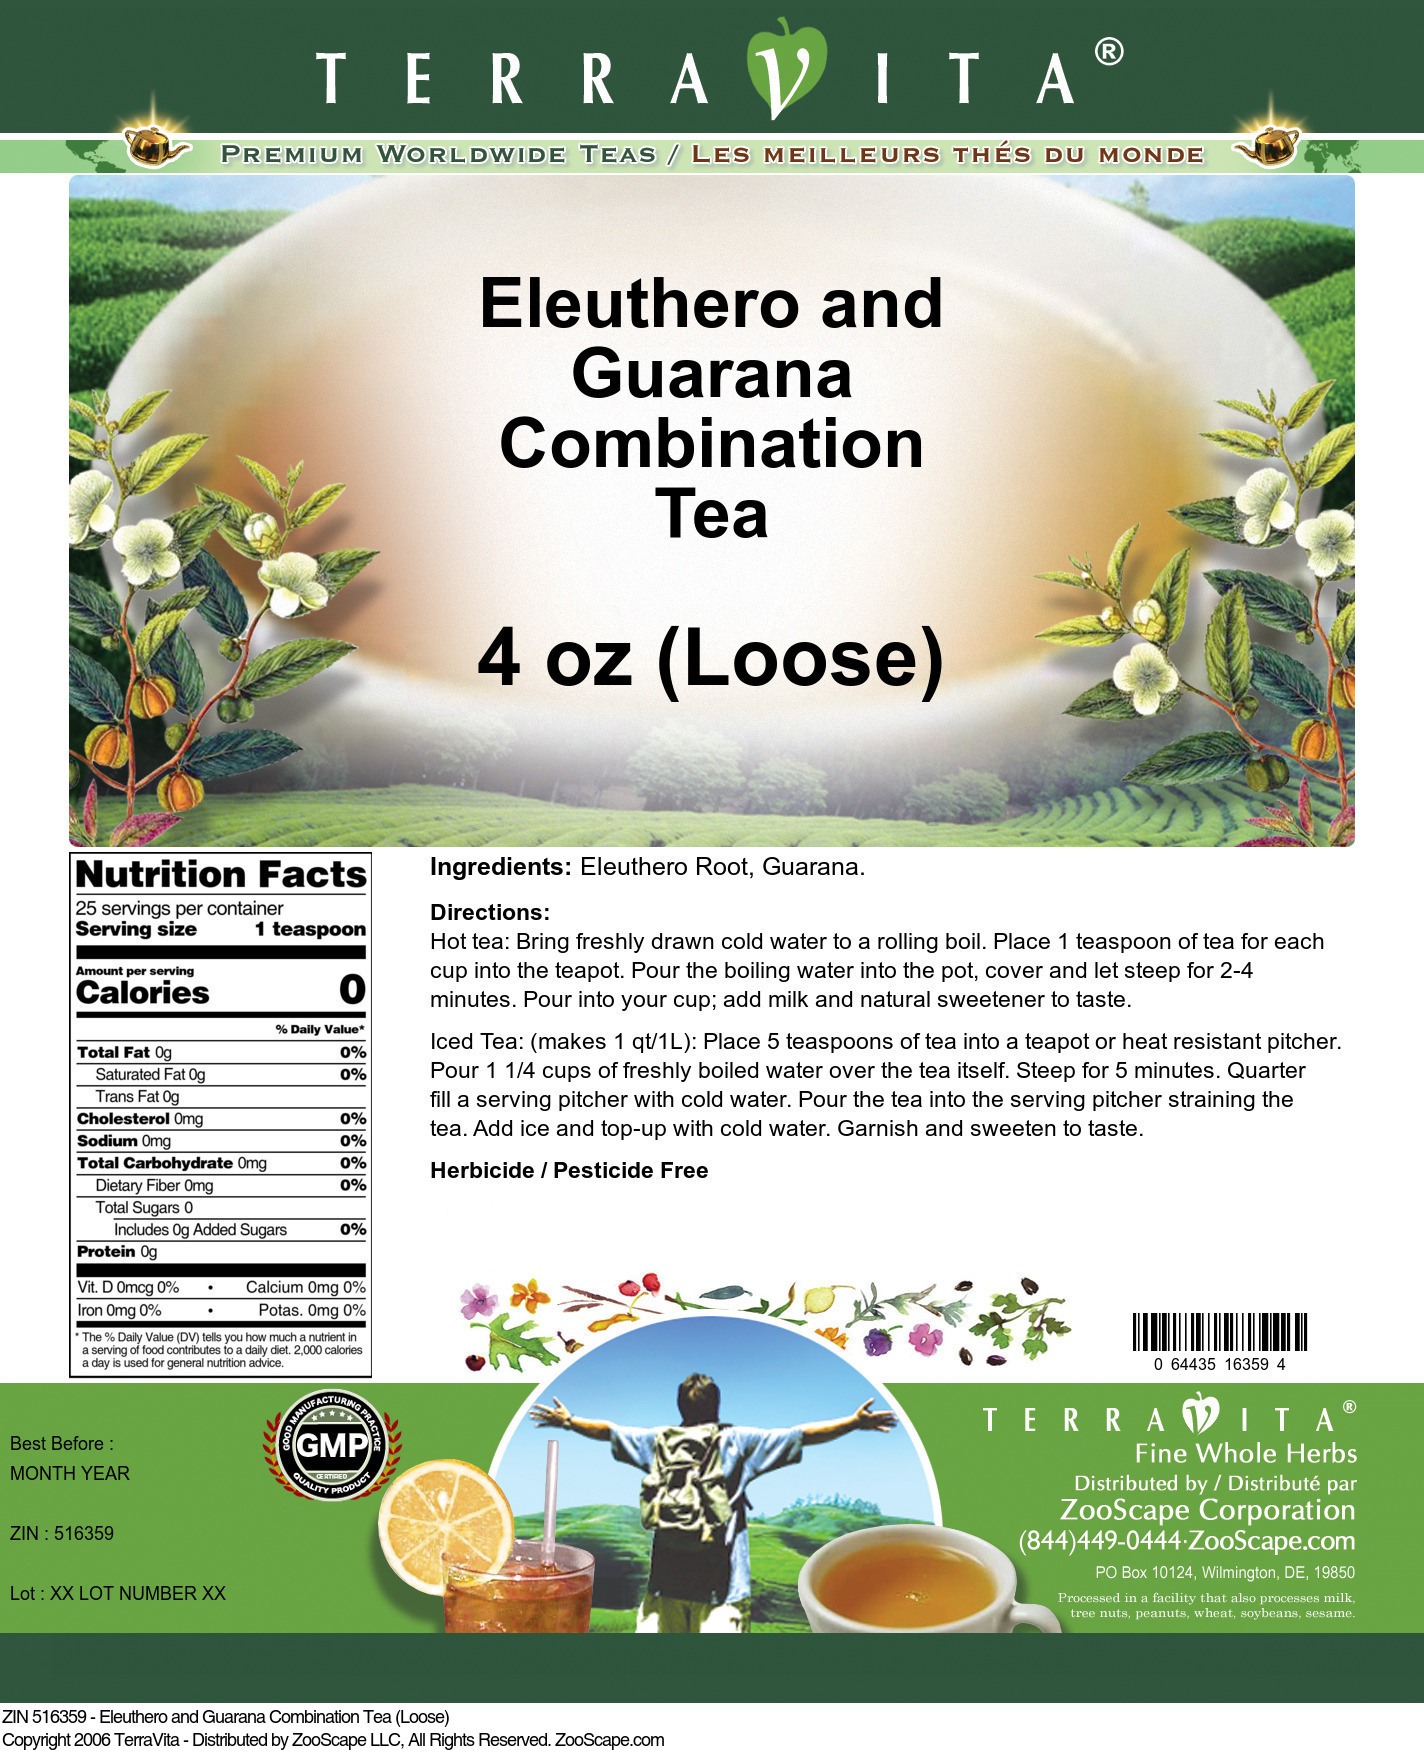 Eleuthero and Guarana Combination Tea (Loose) - Label